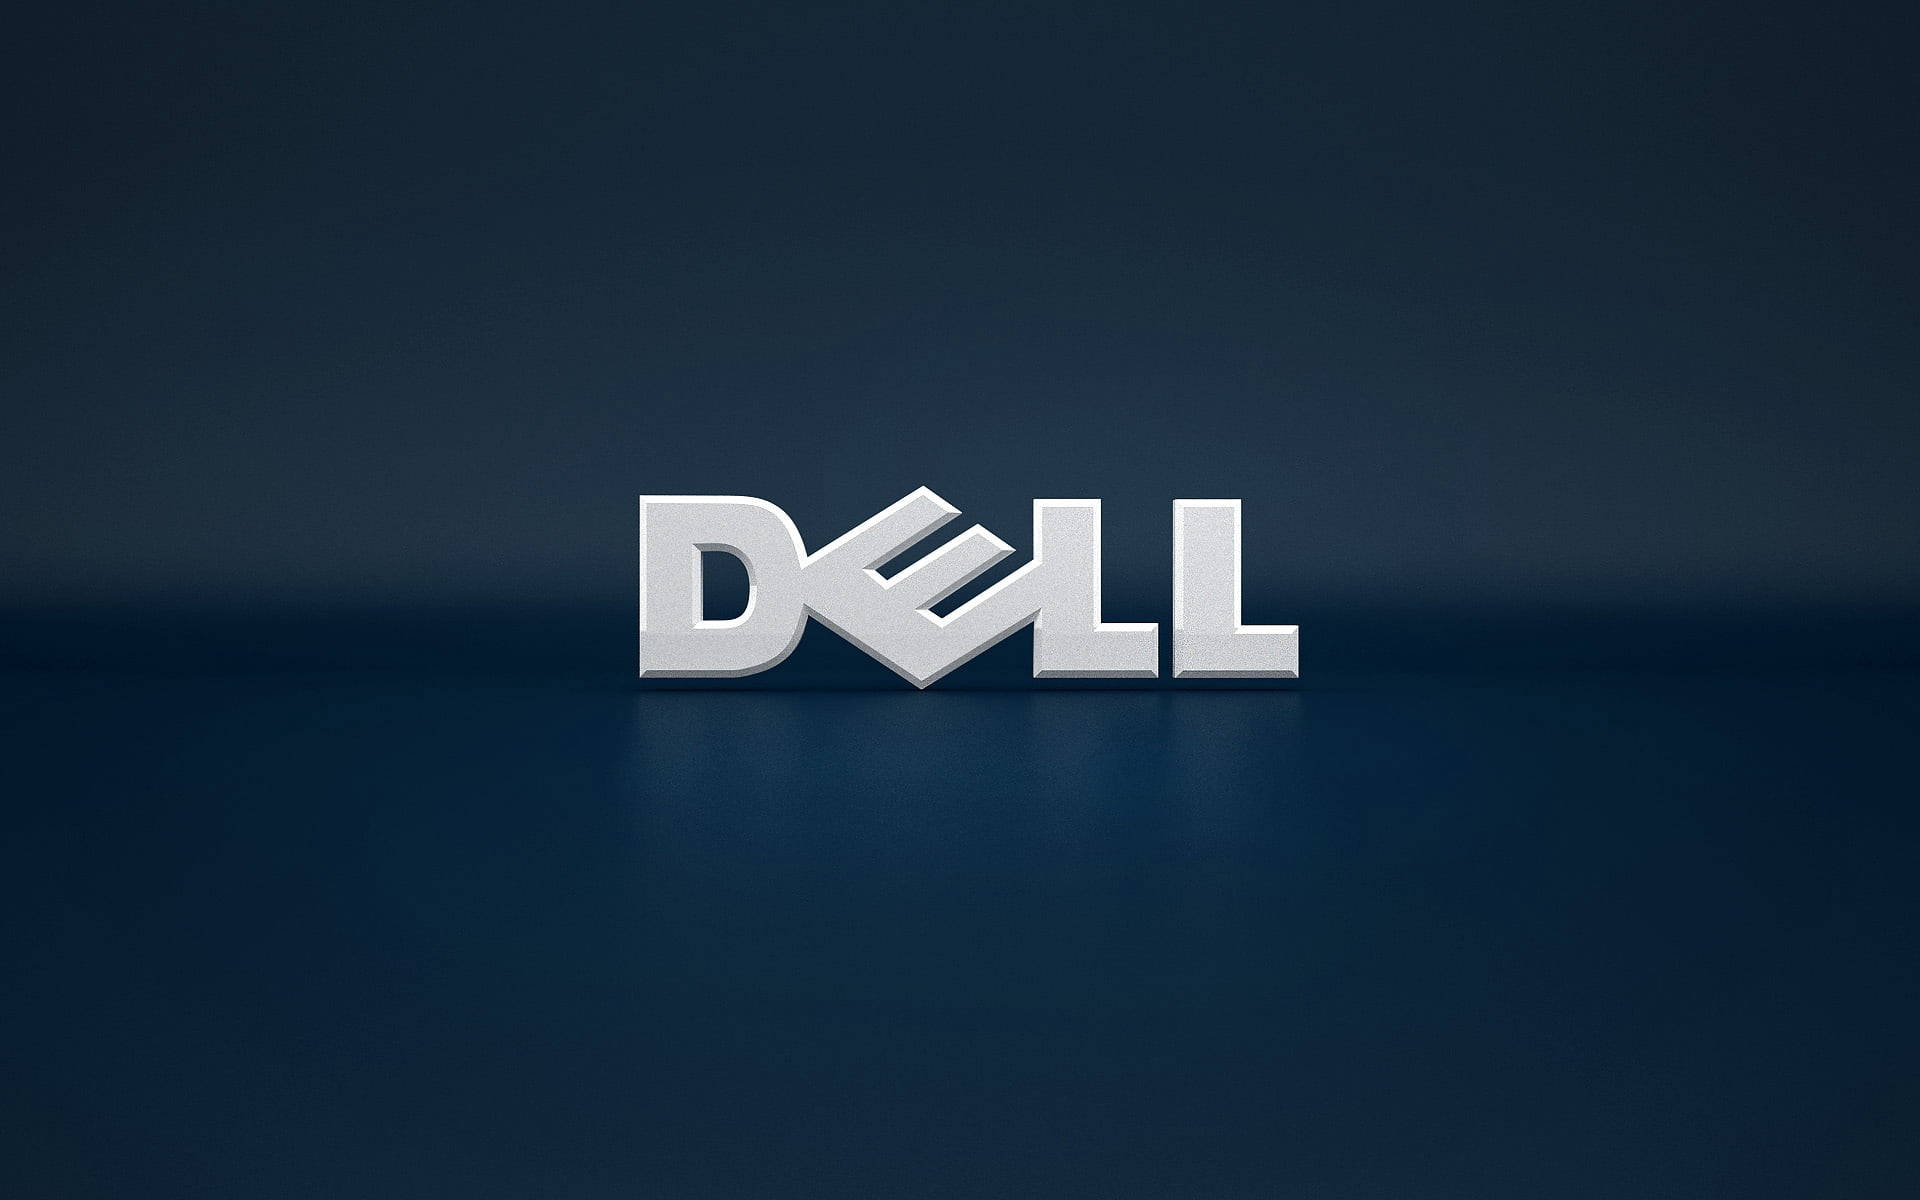 Delllaptop-logo 3d. Wallpaper